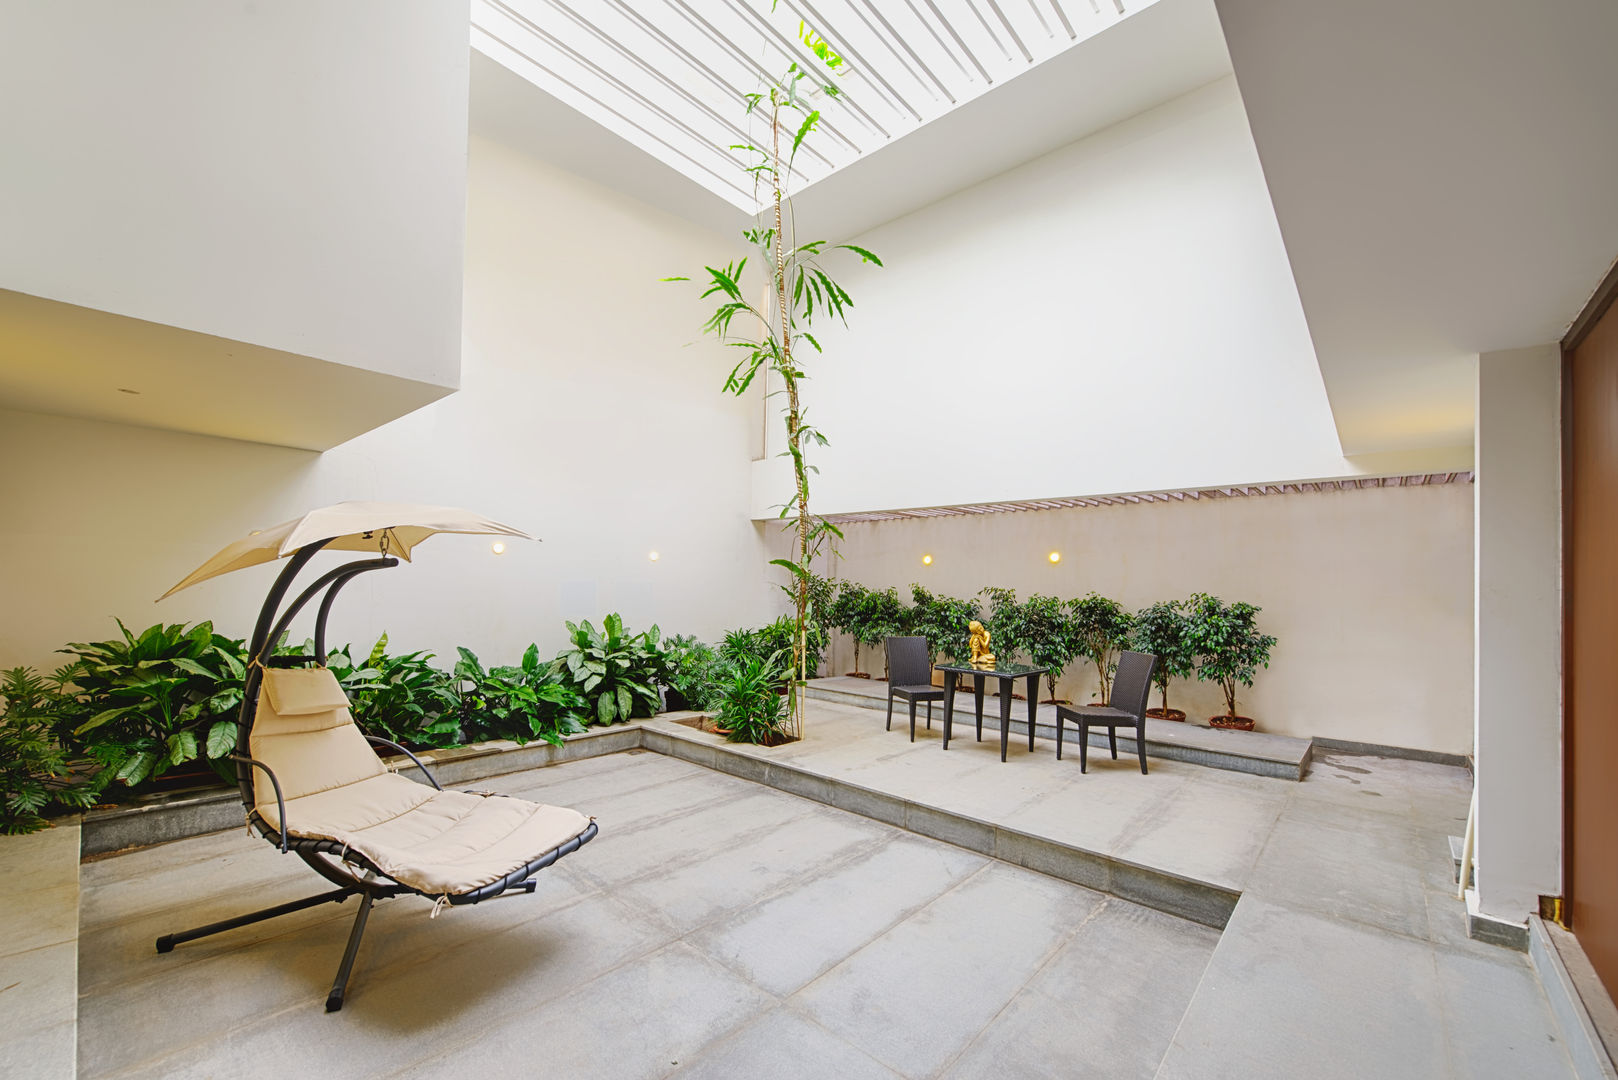 Mobius Home, Architecture Continuous Architecture Continuous Внутренний сад Озеленение